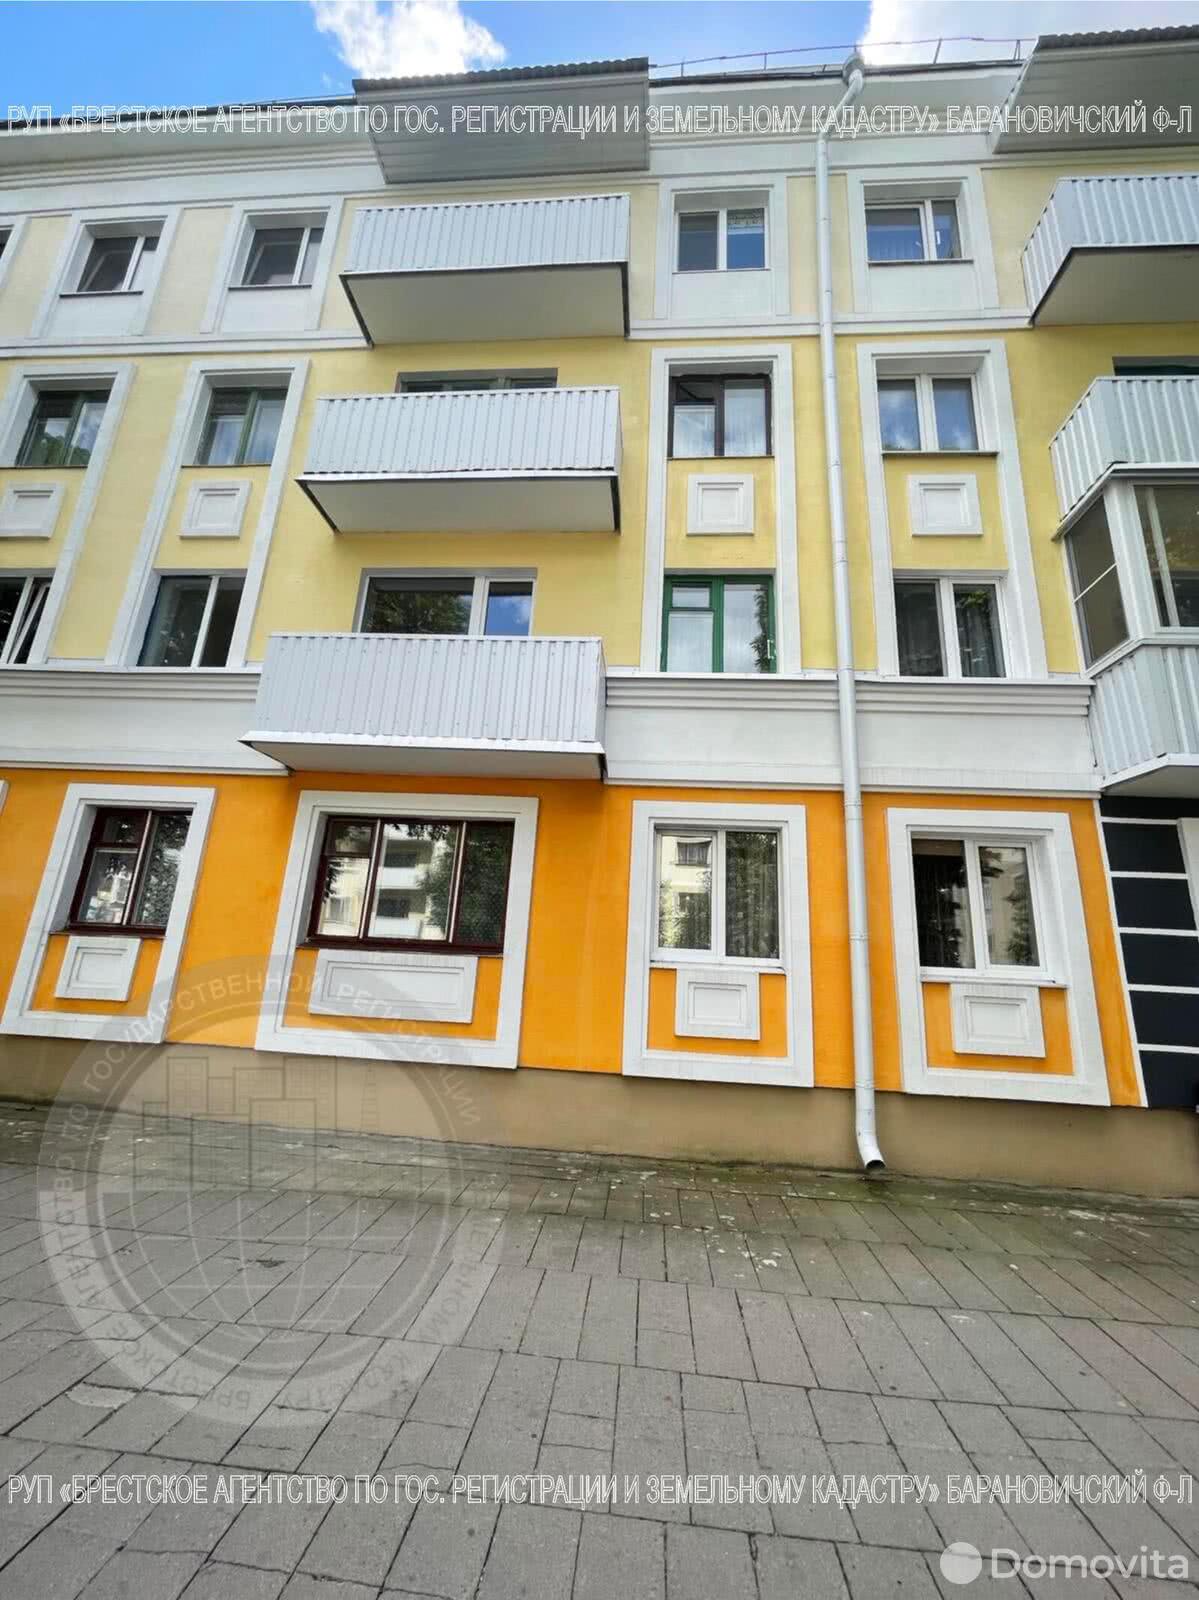 квартира, Барановичи, ул. Комсомольская, д. 17, стоимость продажи 128 328 р.